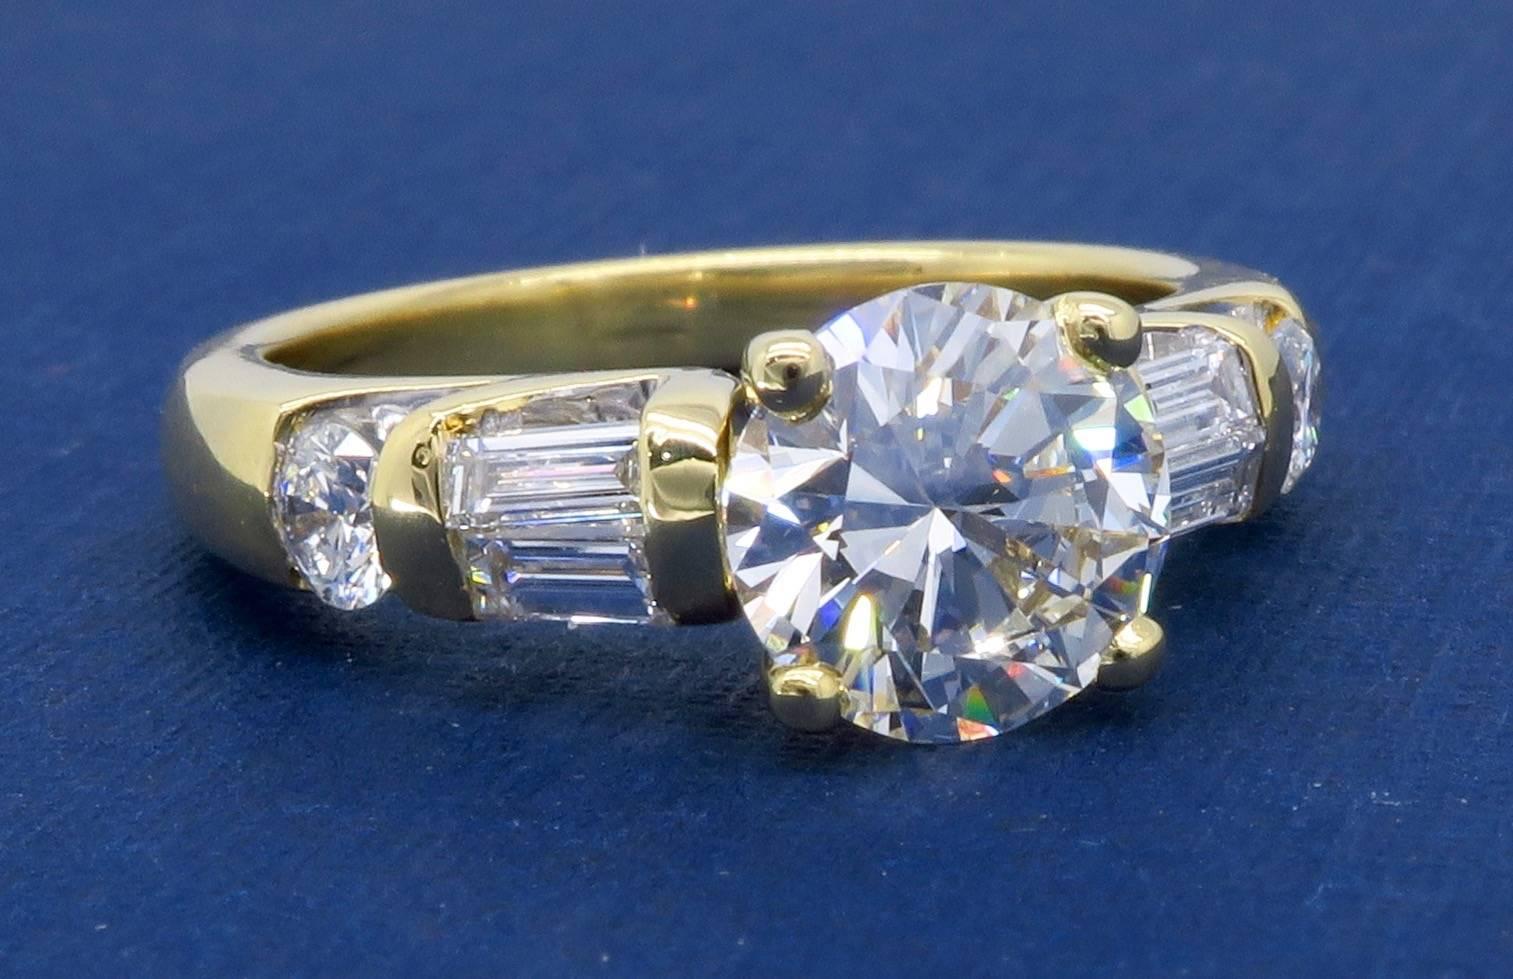 GIA Certified 1.66 Carat Diamond Engagement Ring in 18 Karat Yellow Gold 5